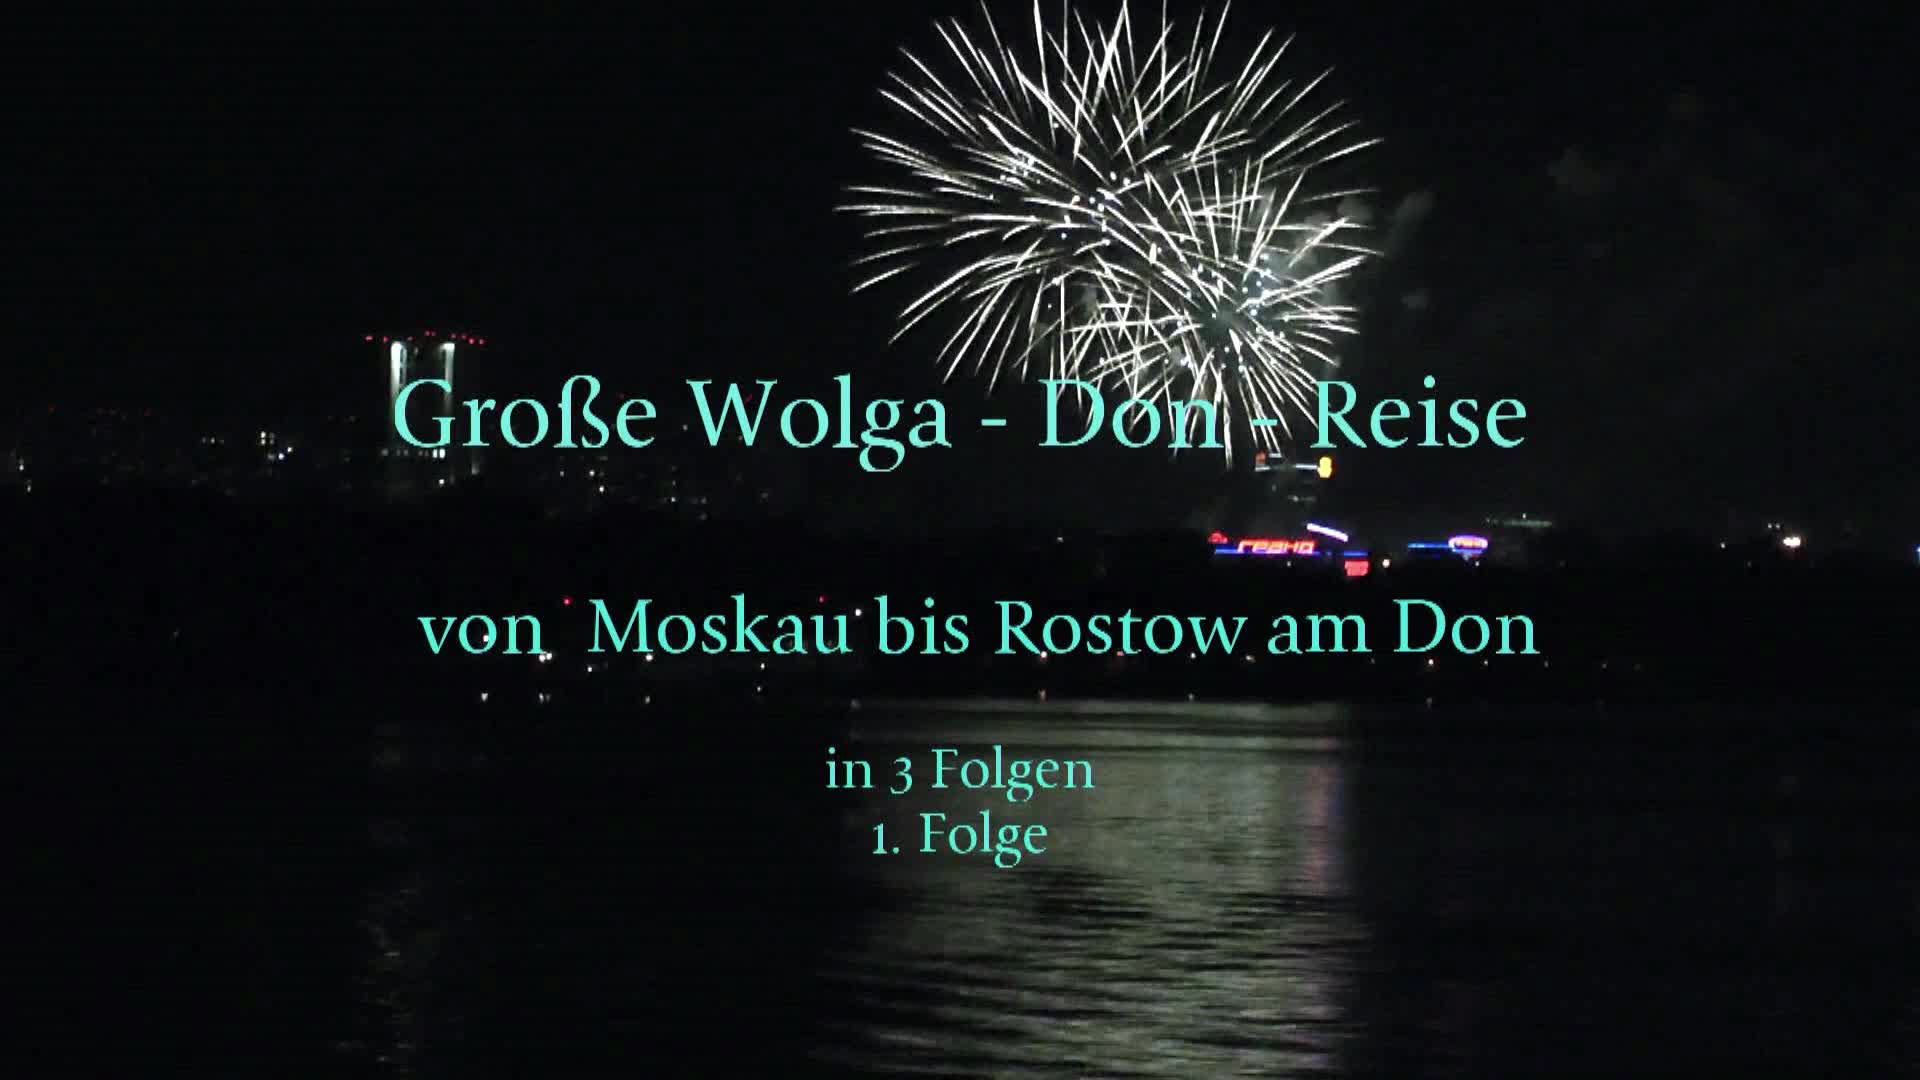 Große Wolga - Don - Reise Folge 1